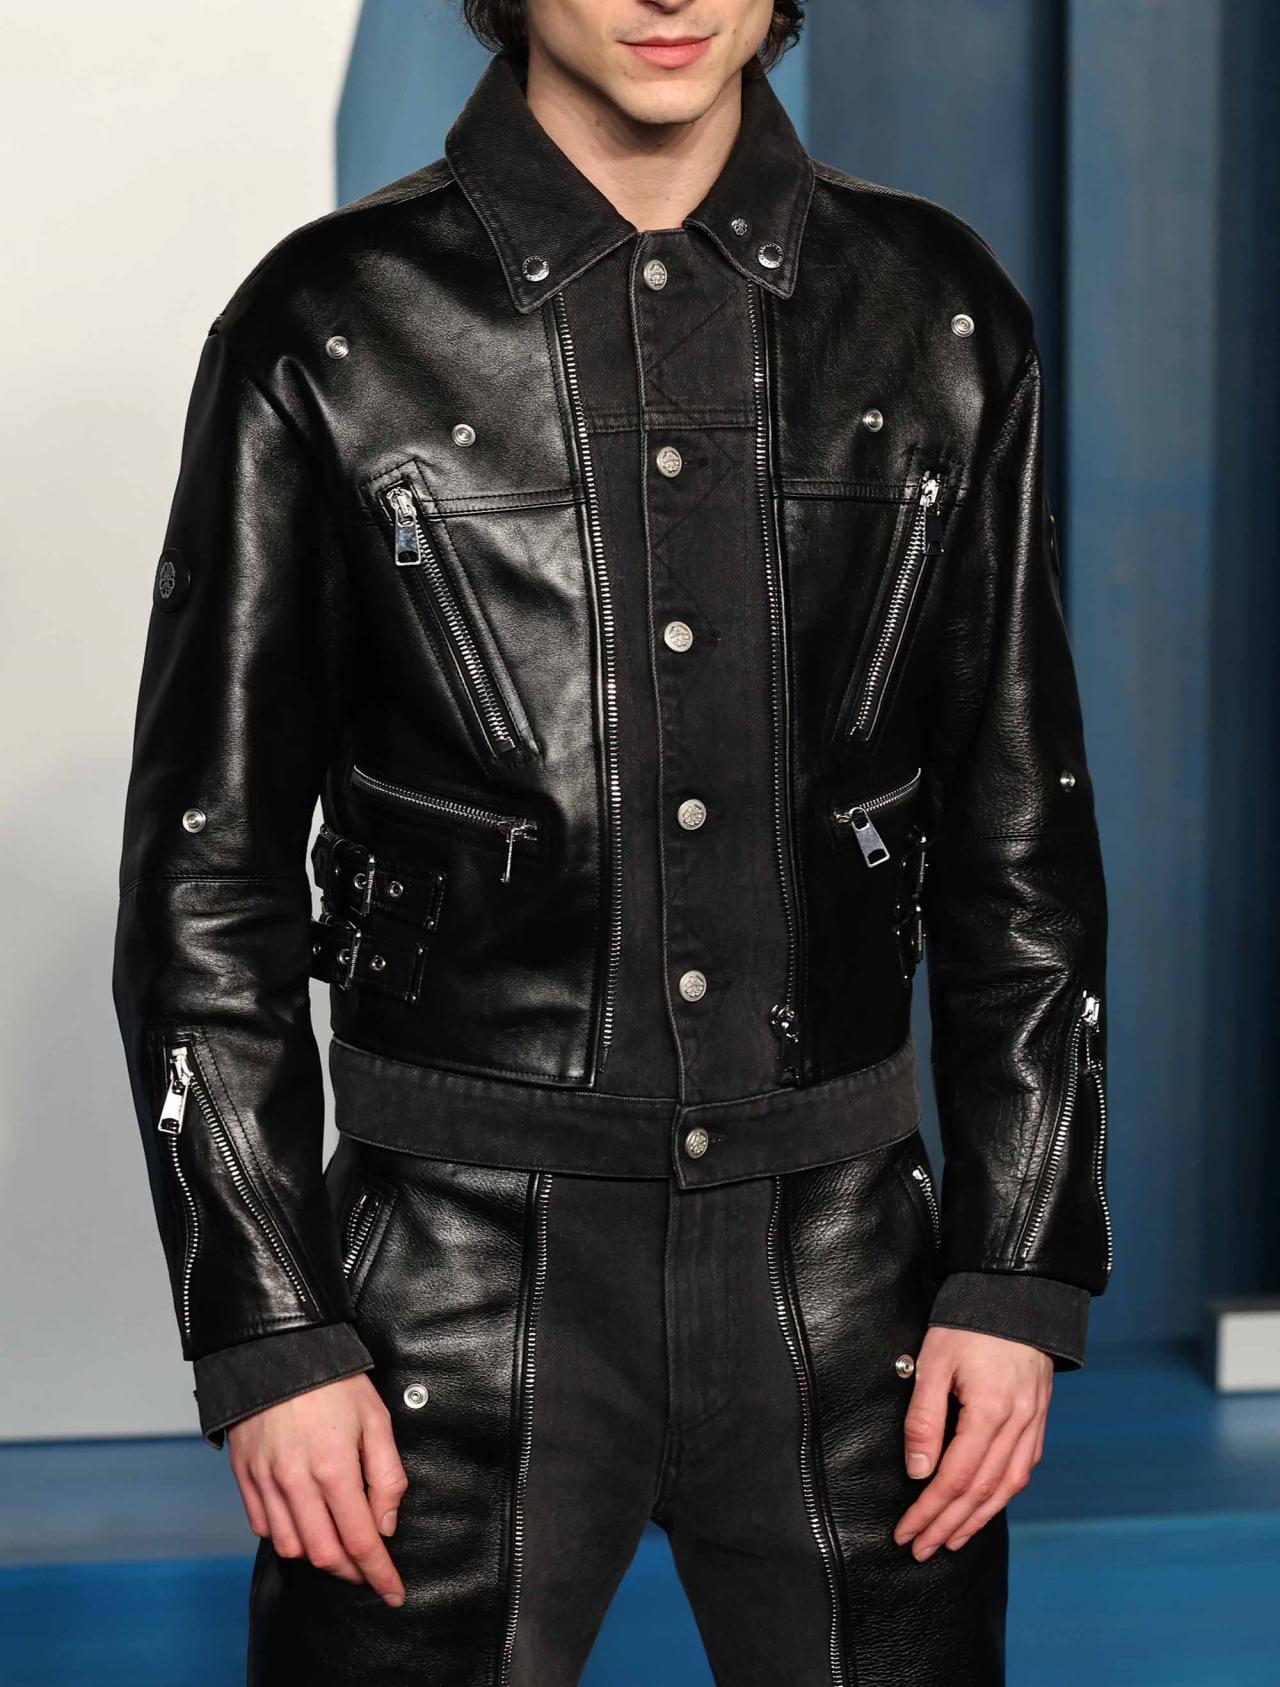 Timothée Chalamet Films Bleu de Chanel Commercial in Leather Suit & Combat  Boots